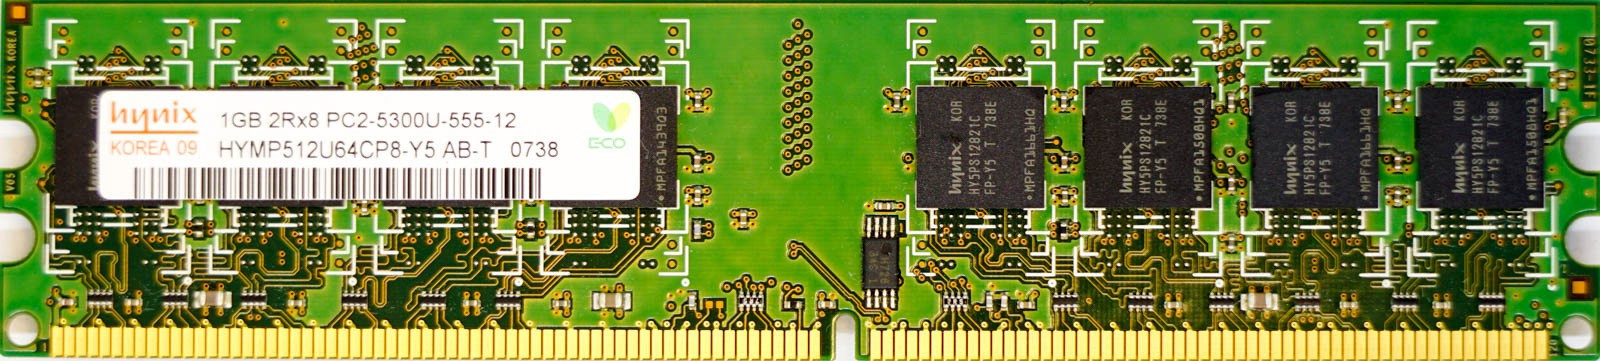 Hynix - 1GB PC2-5300U (DDR2-667Mhz, 2RX8)